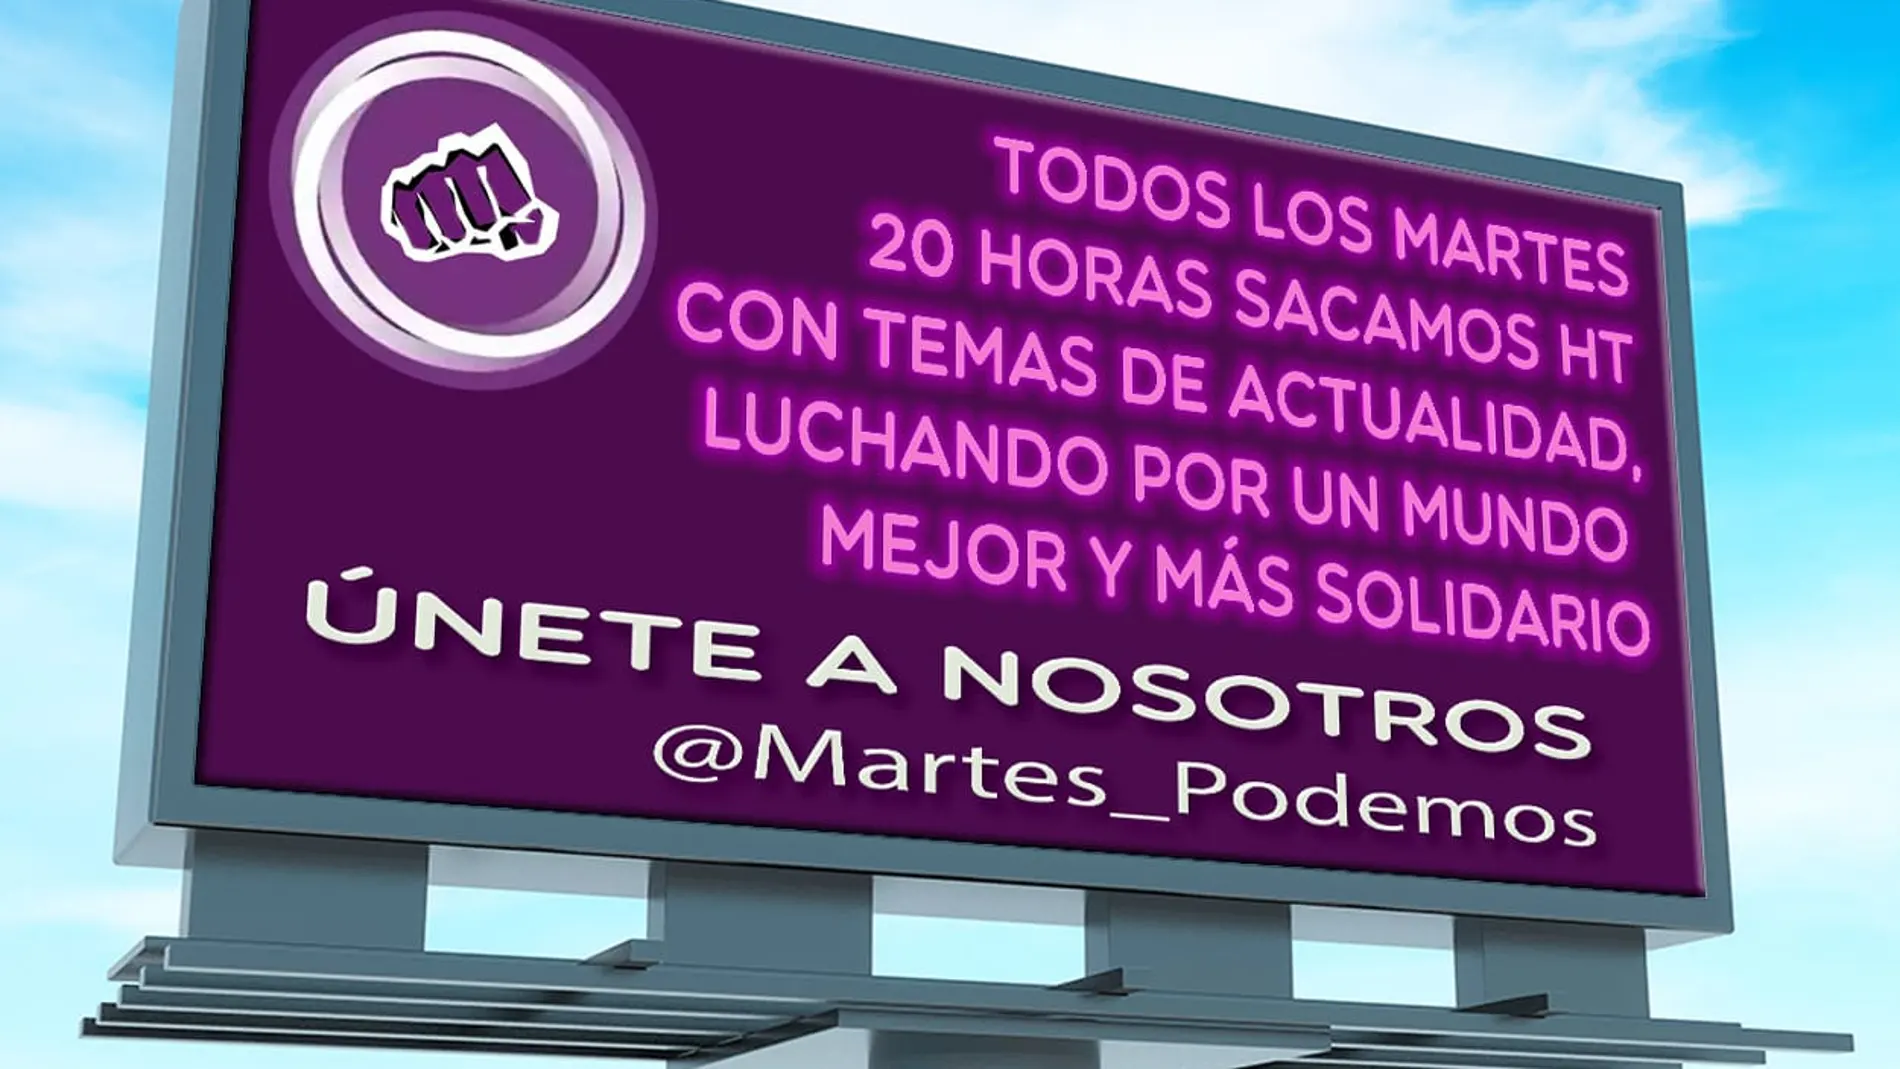 Las "guerrillas" de Podemos lanzan una campaña semanal en redes para inundar Twitter de mensajes de apoyo a los morados y contra la oposición